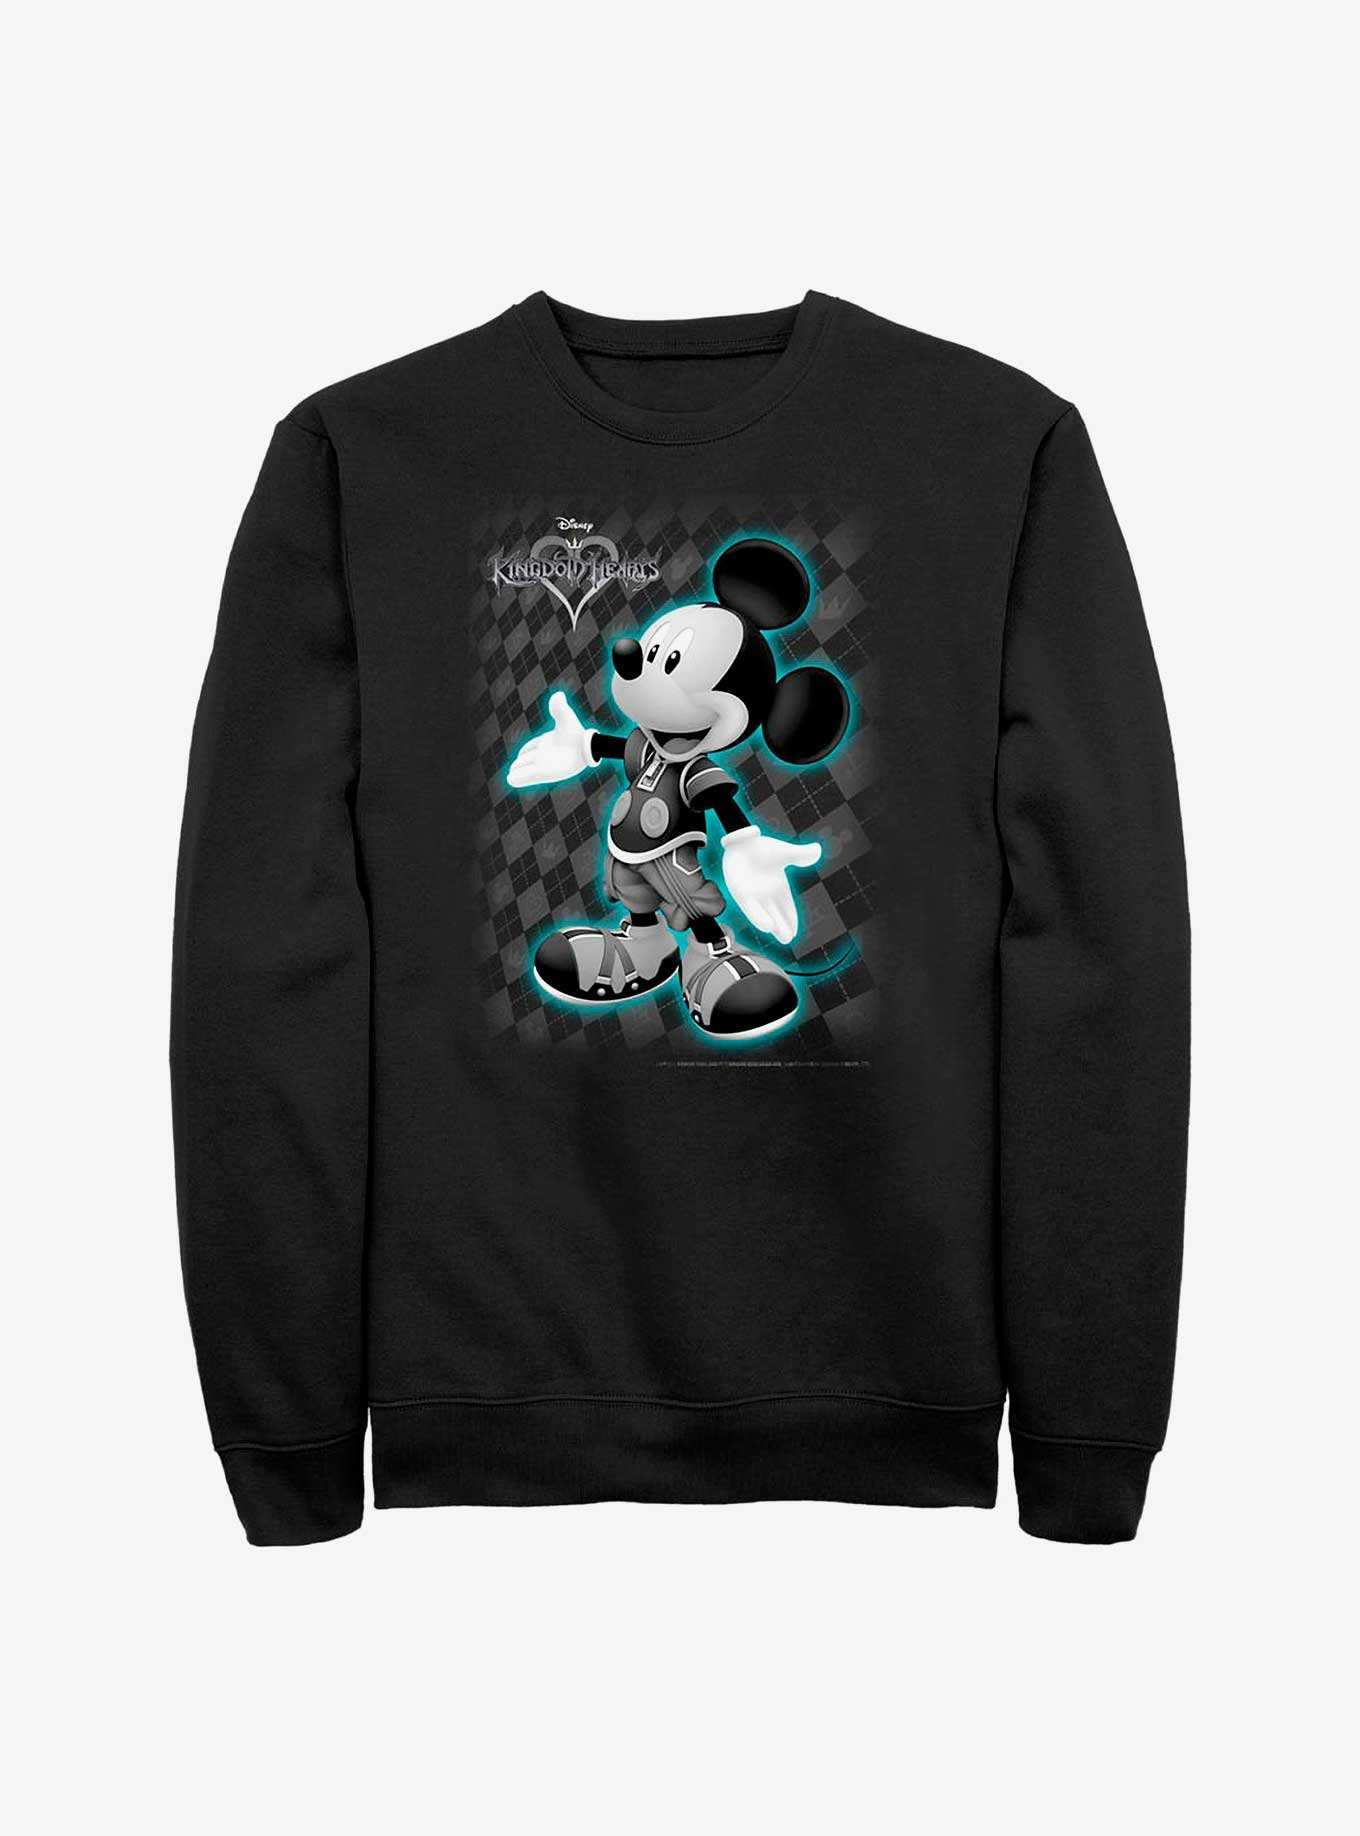 Disney Kingdom Hearts Mickey Pose Crew Sweatshirt, , hi-res